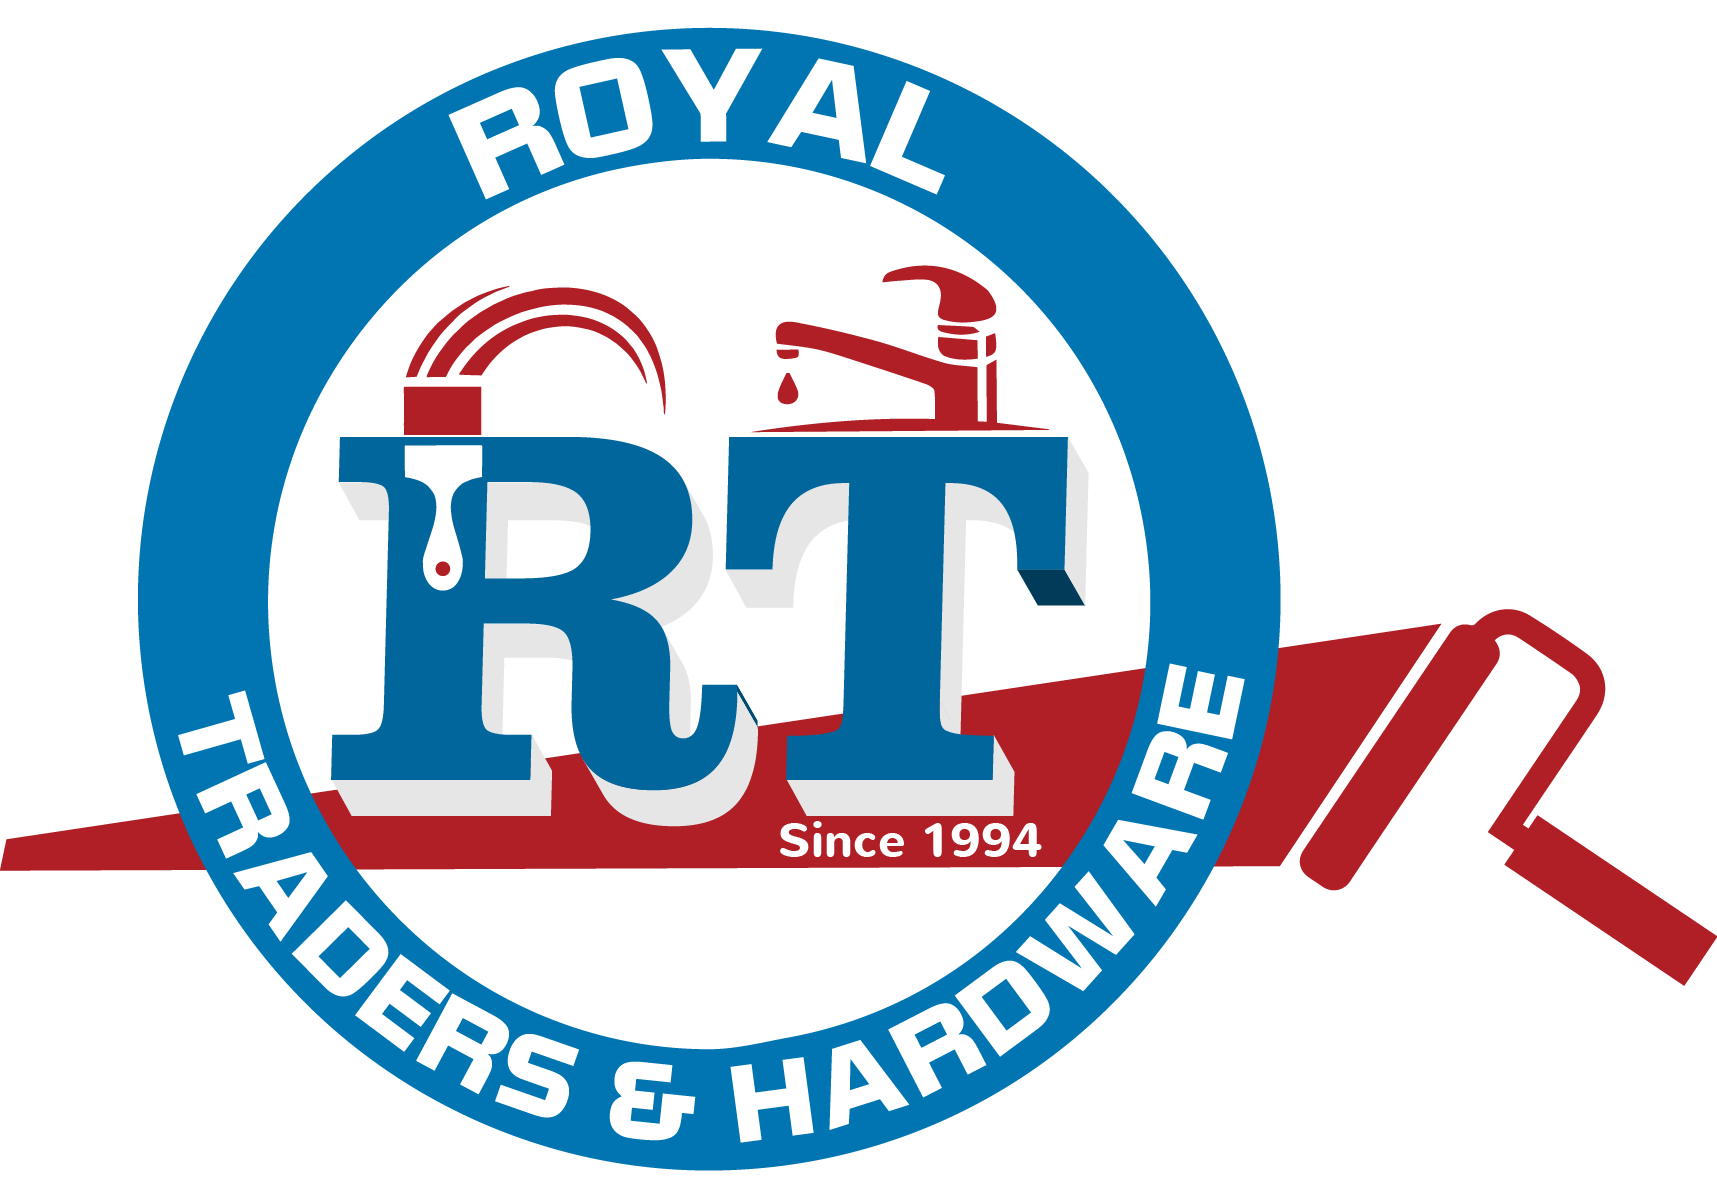 Royal Traders Hardware